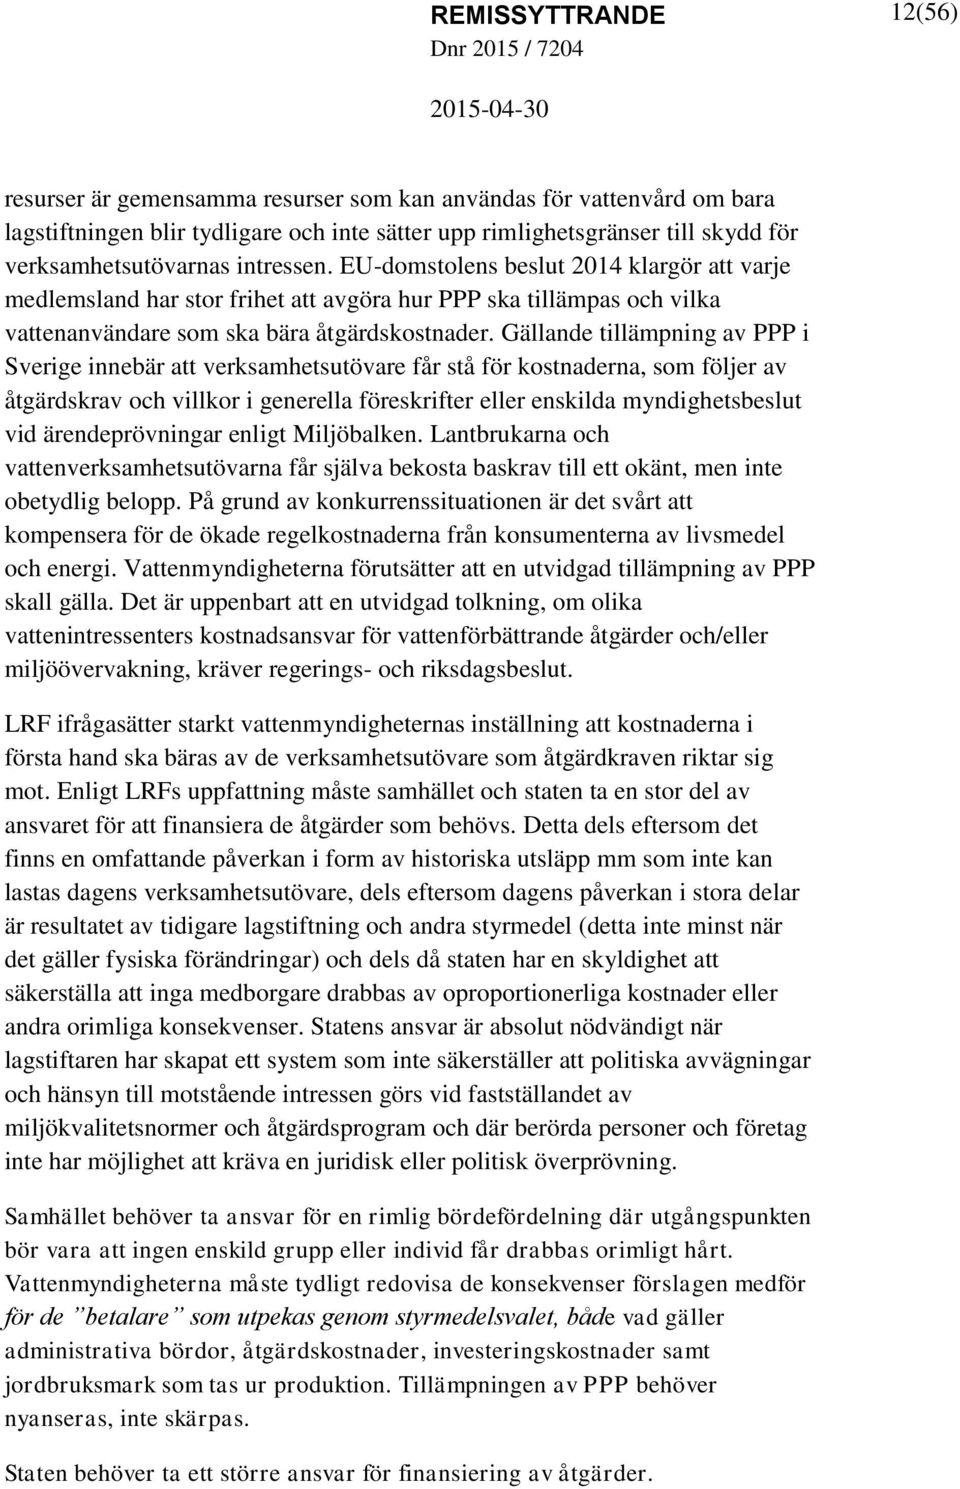 Gällande tillämpning av PPP i Sverige innebär att verksamhetsutövare får stå för kostnaderna, som följer av åtgärdskrav och villkor i generella föreskrifter eller enskilda myndighetsbeslut vid